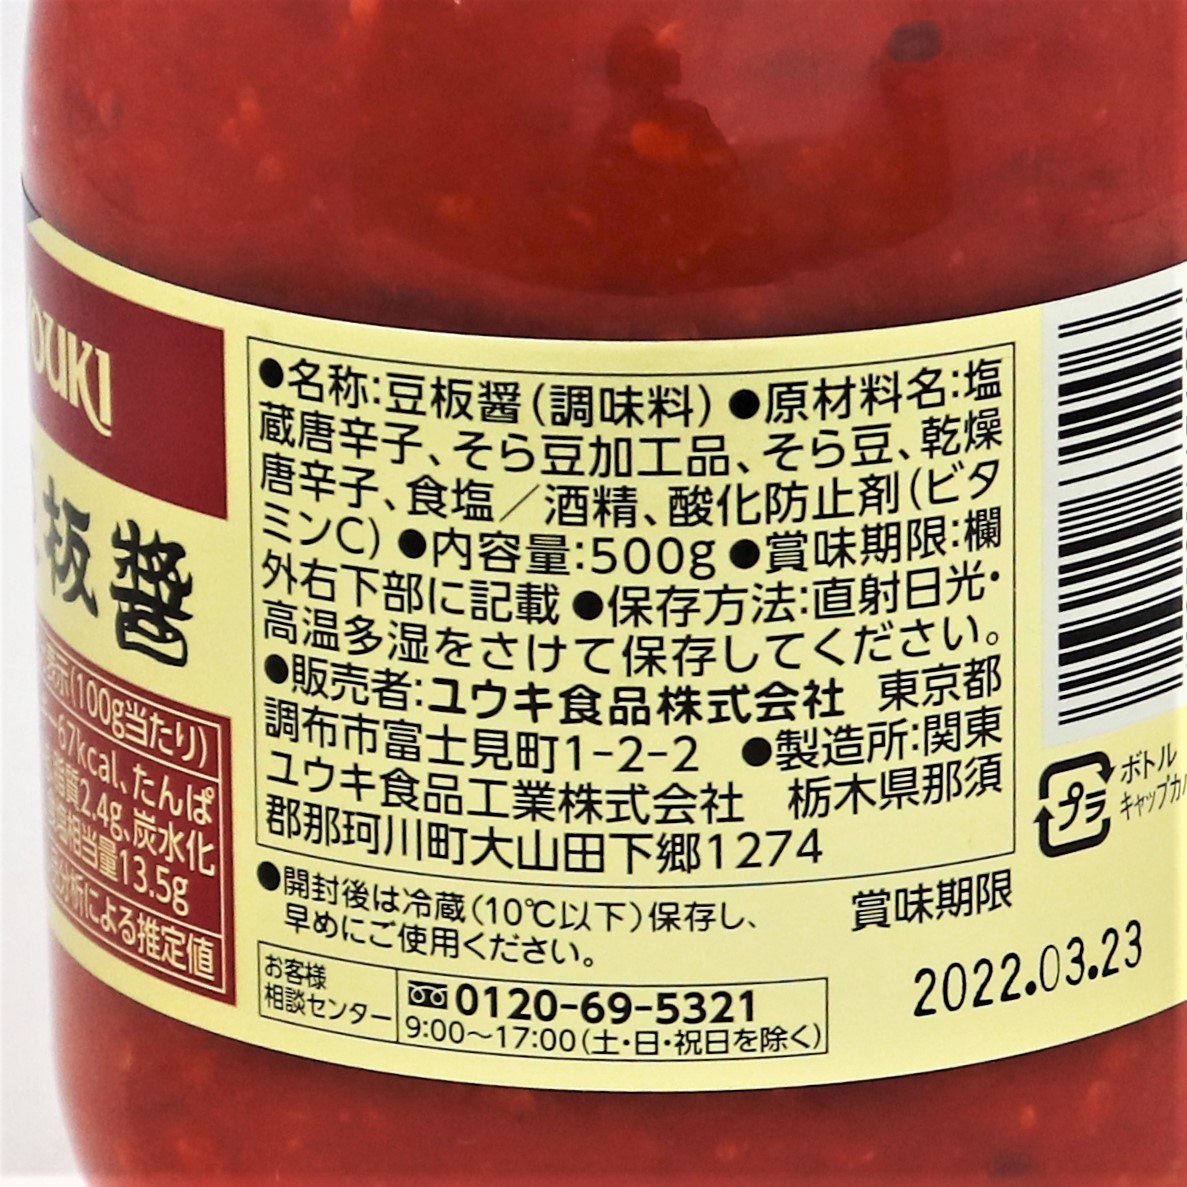 ユウキ食品 四川豆板醤業務用 500g|業務用食品・食材の通販は食材デポ